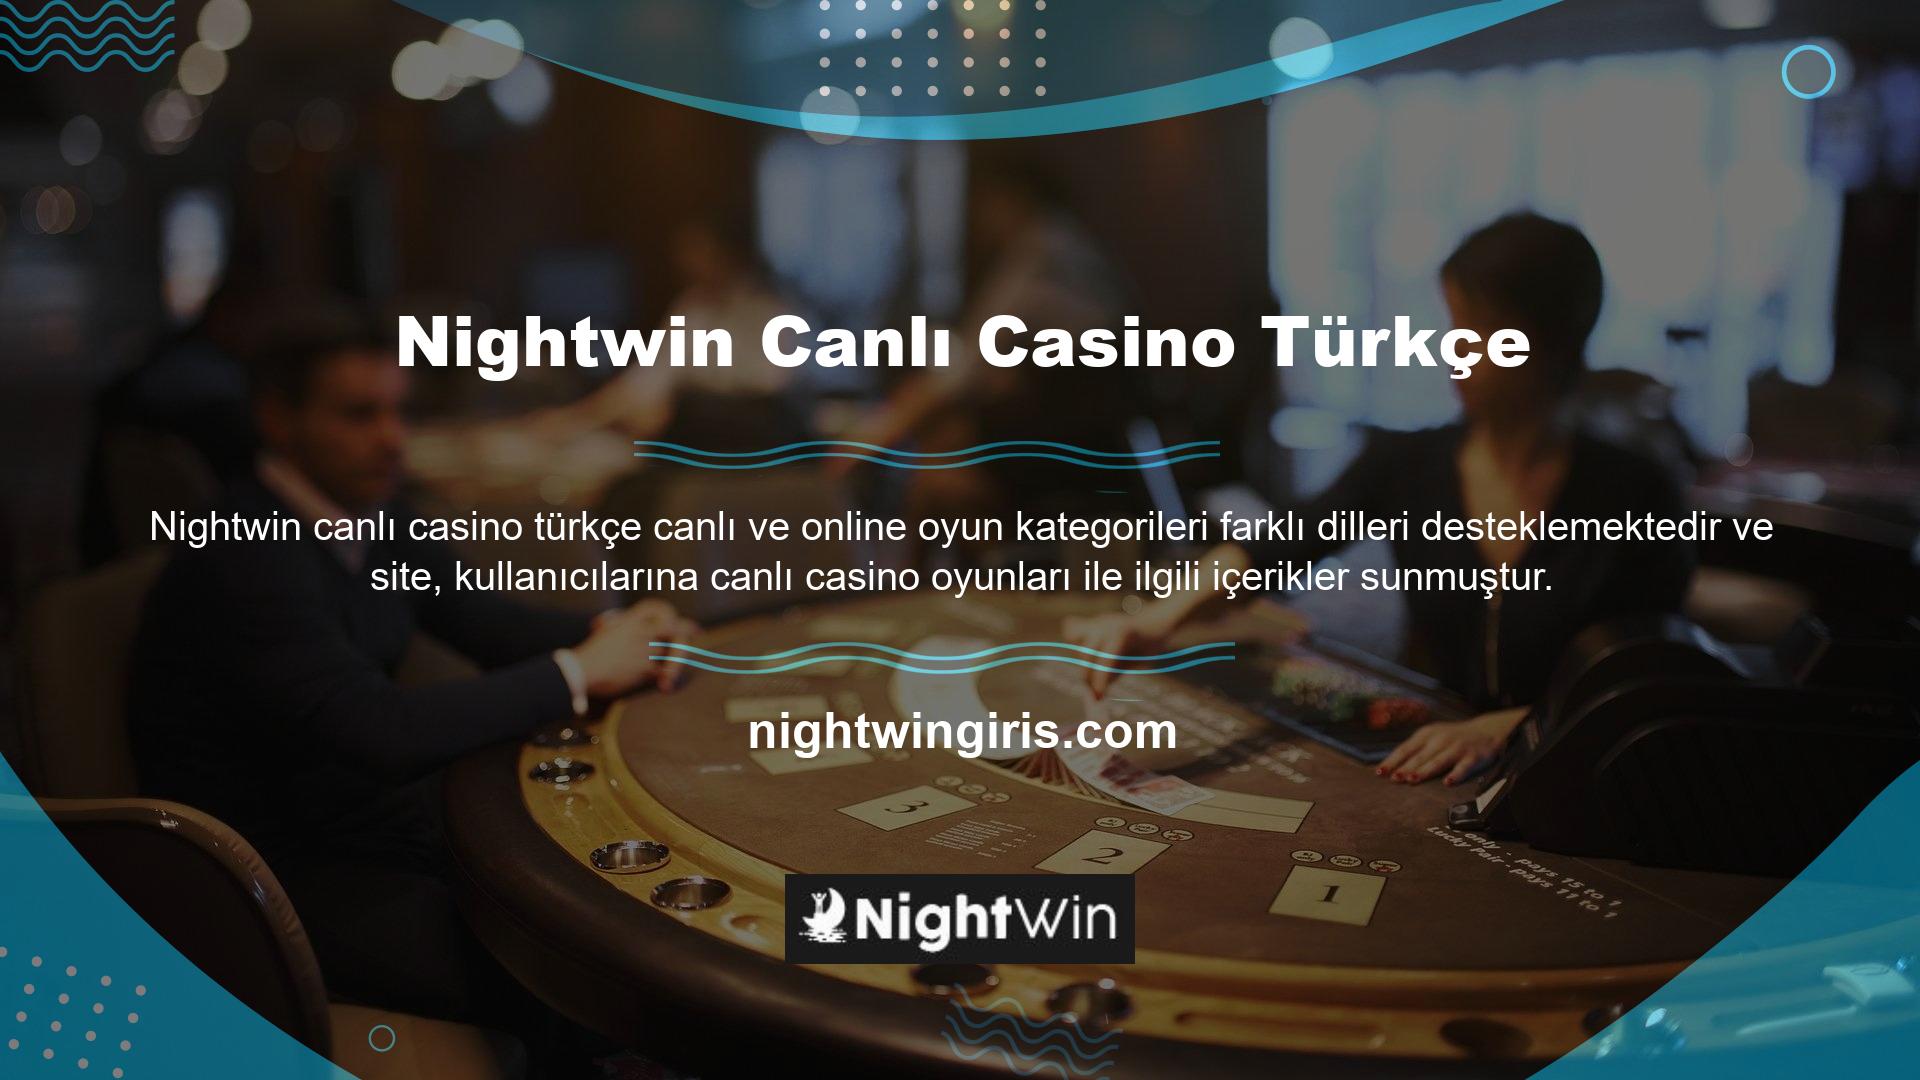 İngilizce canlı casino alternatiflerinin yanı sıra Türkçe canlı casino alternatifleri de gündemde